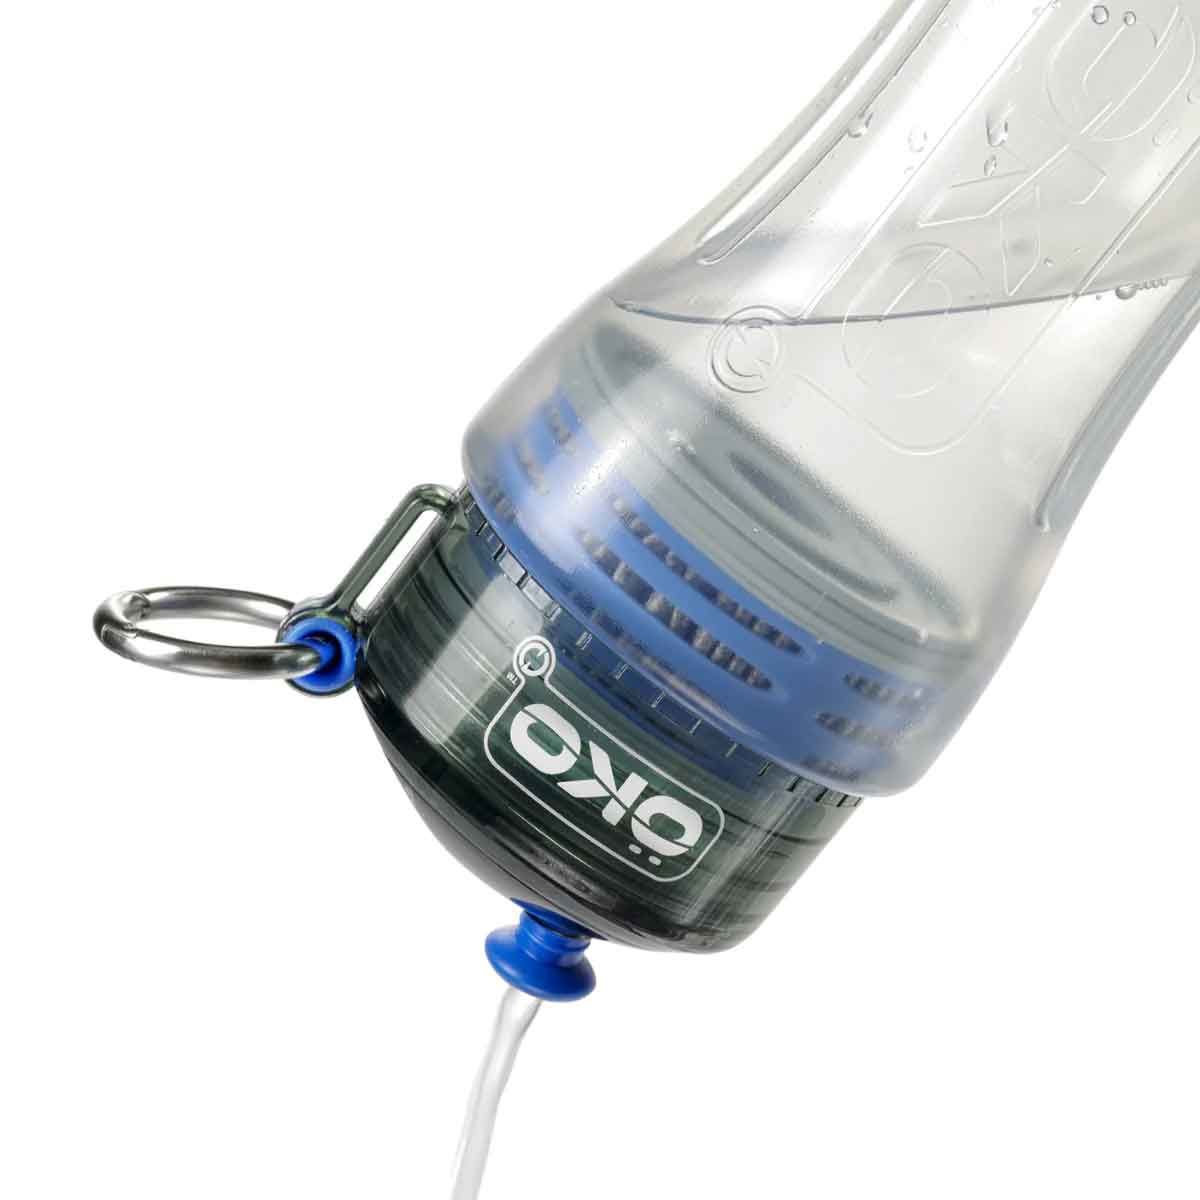 Gourde filtrante ÖKO - 650 ml - Bleu